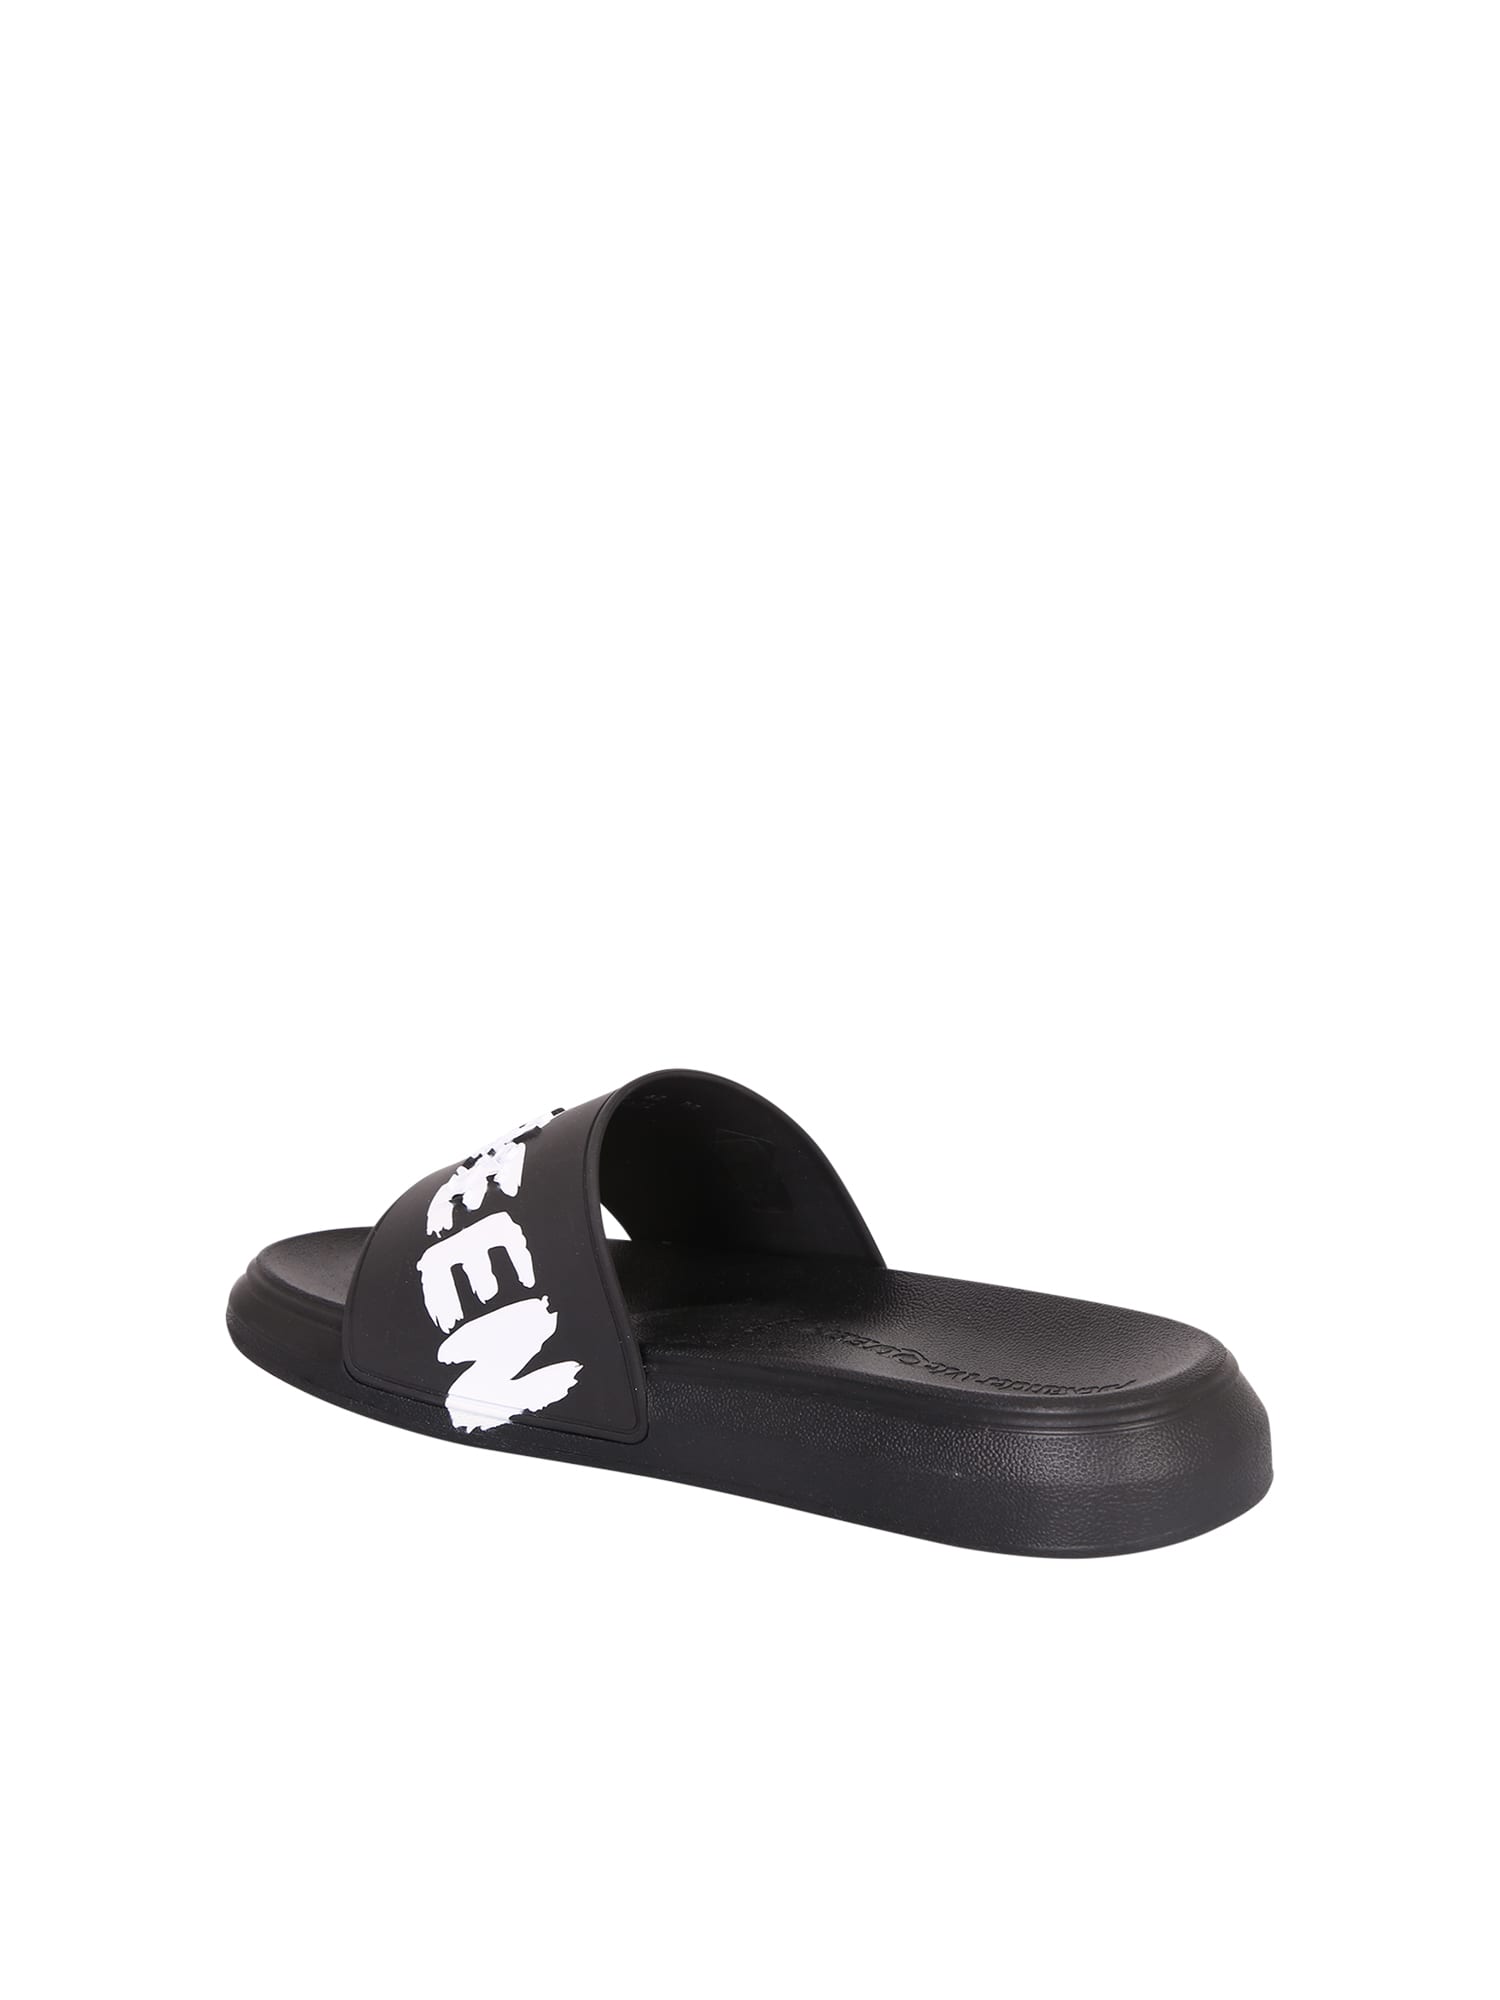 Shop Alexander Mcqueen Black Slide Sandals